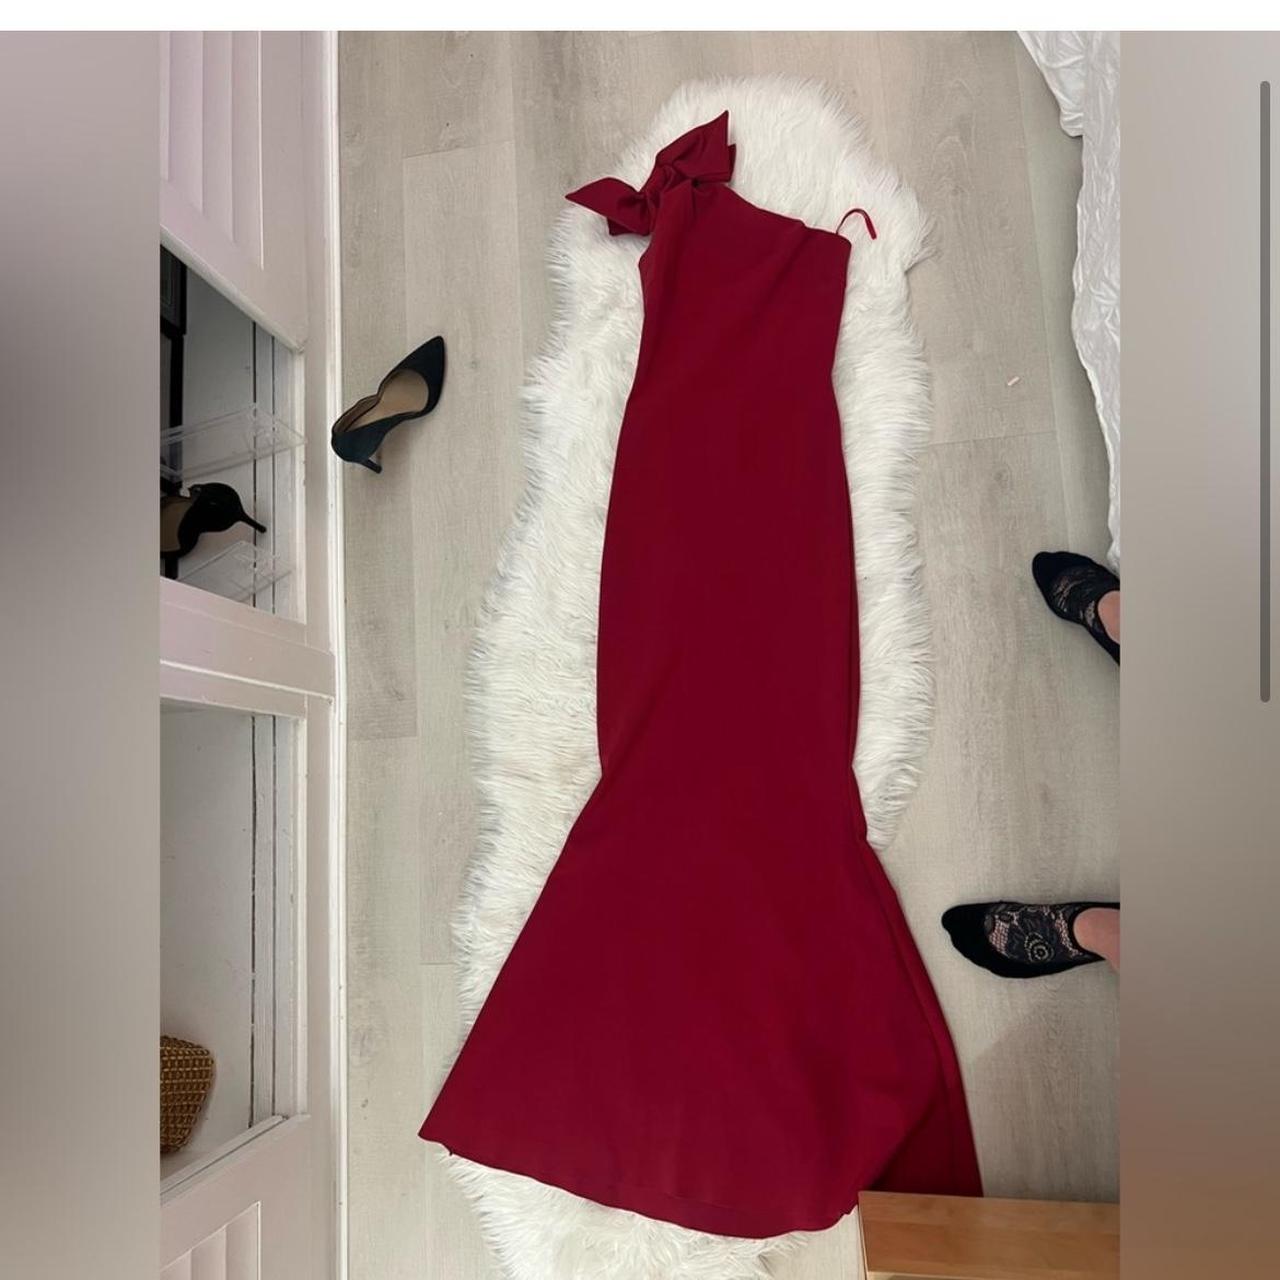 Chiara Boni La Petite Robe Women's Red Dress (3)